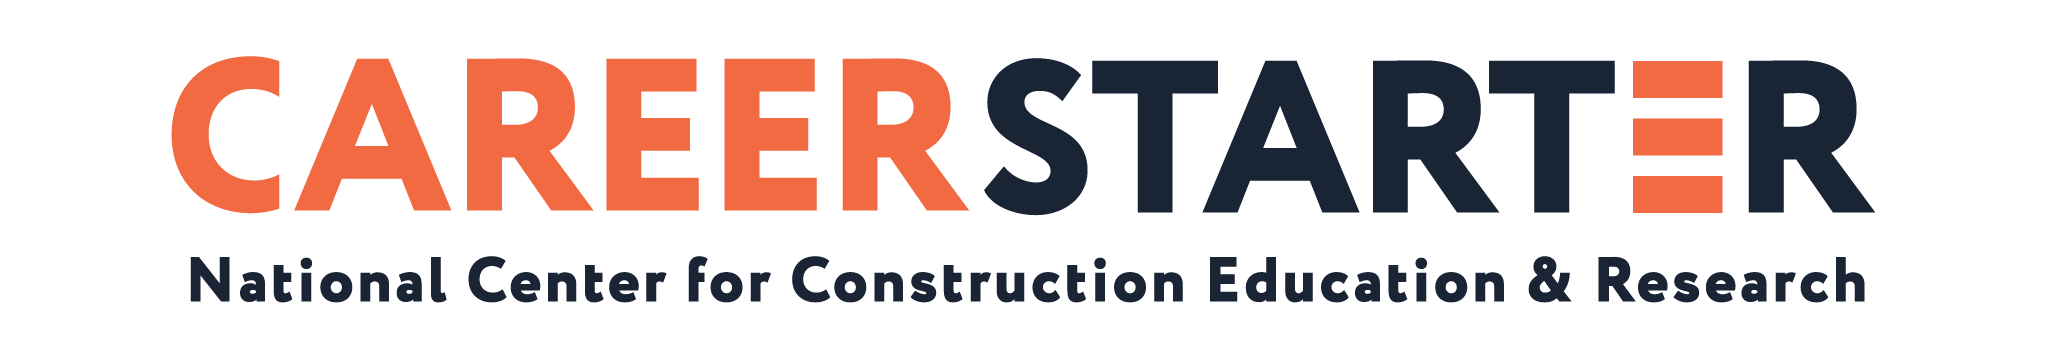 CareerStarter logo